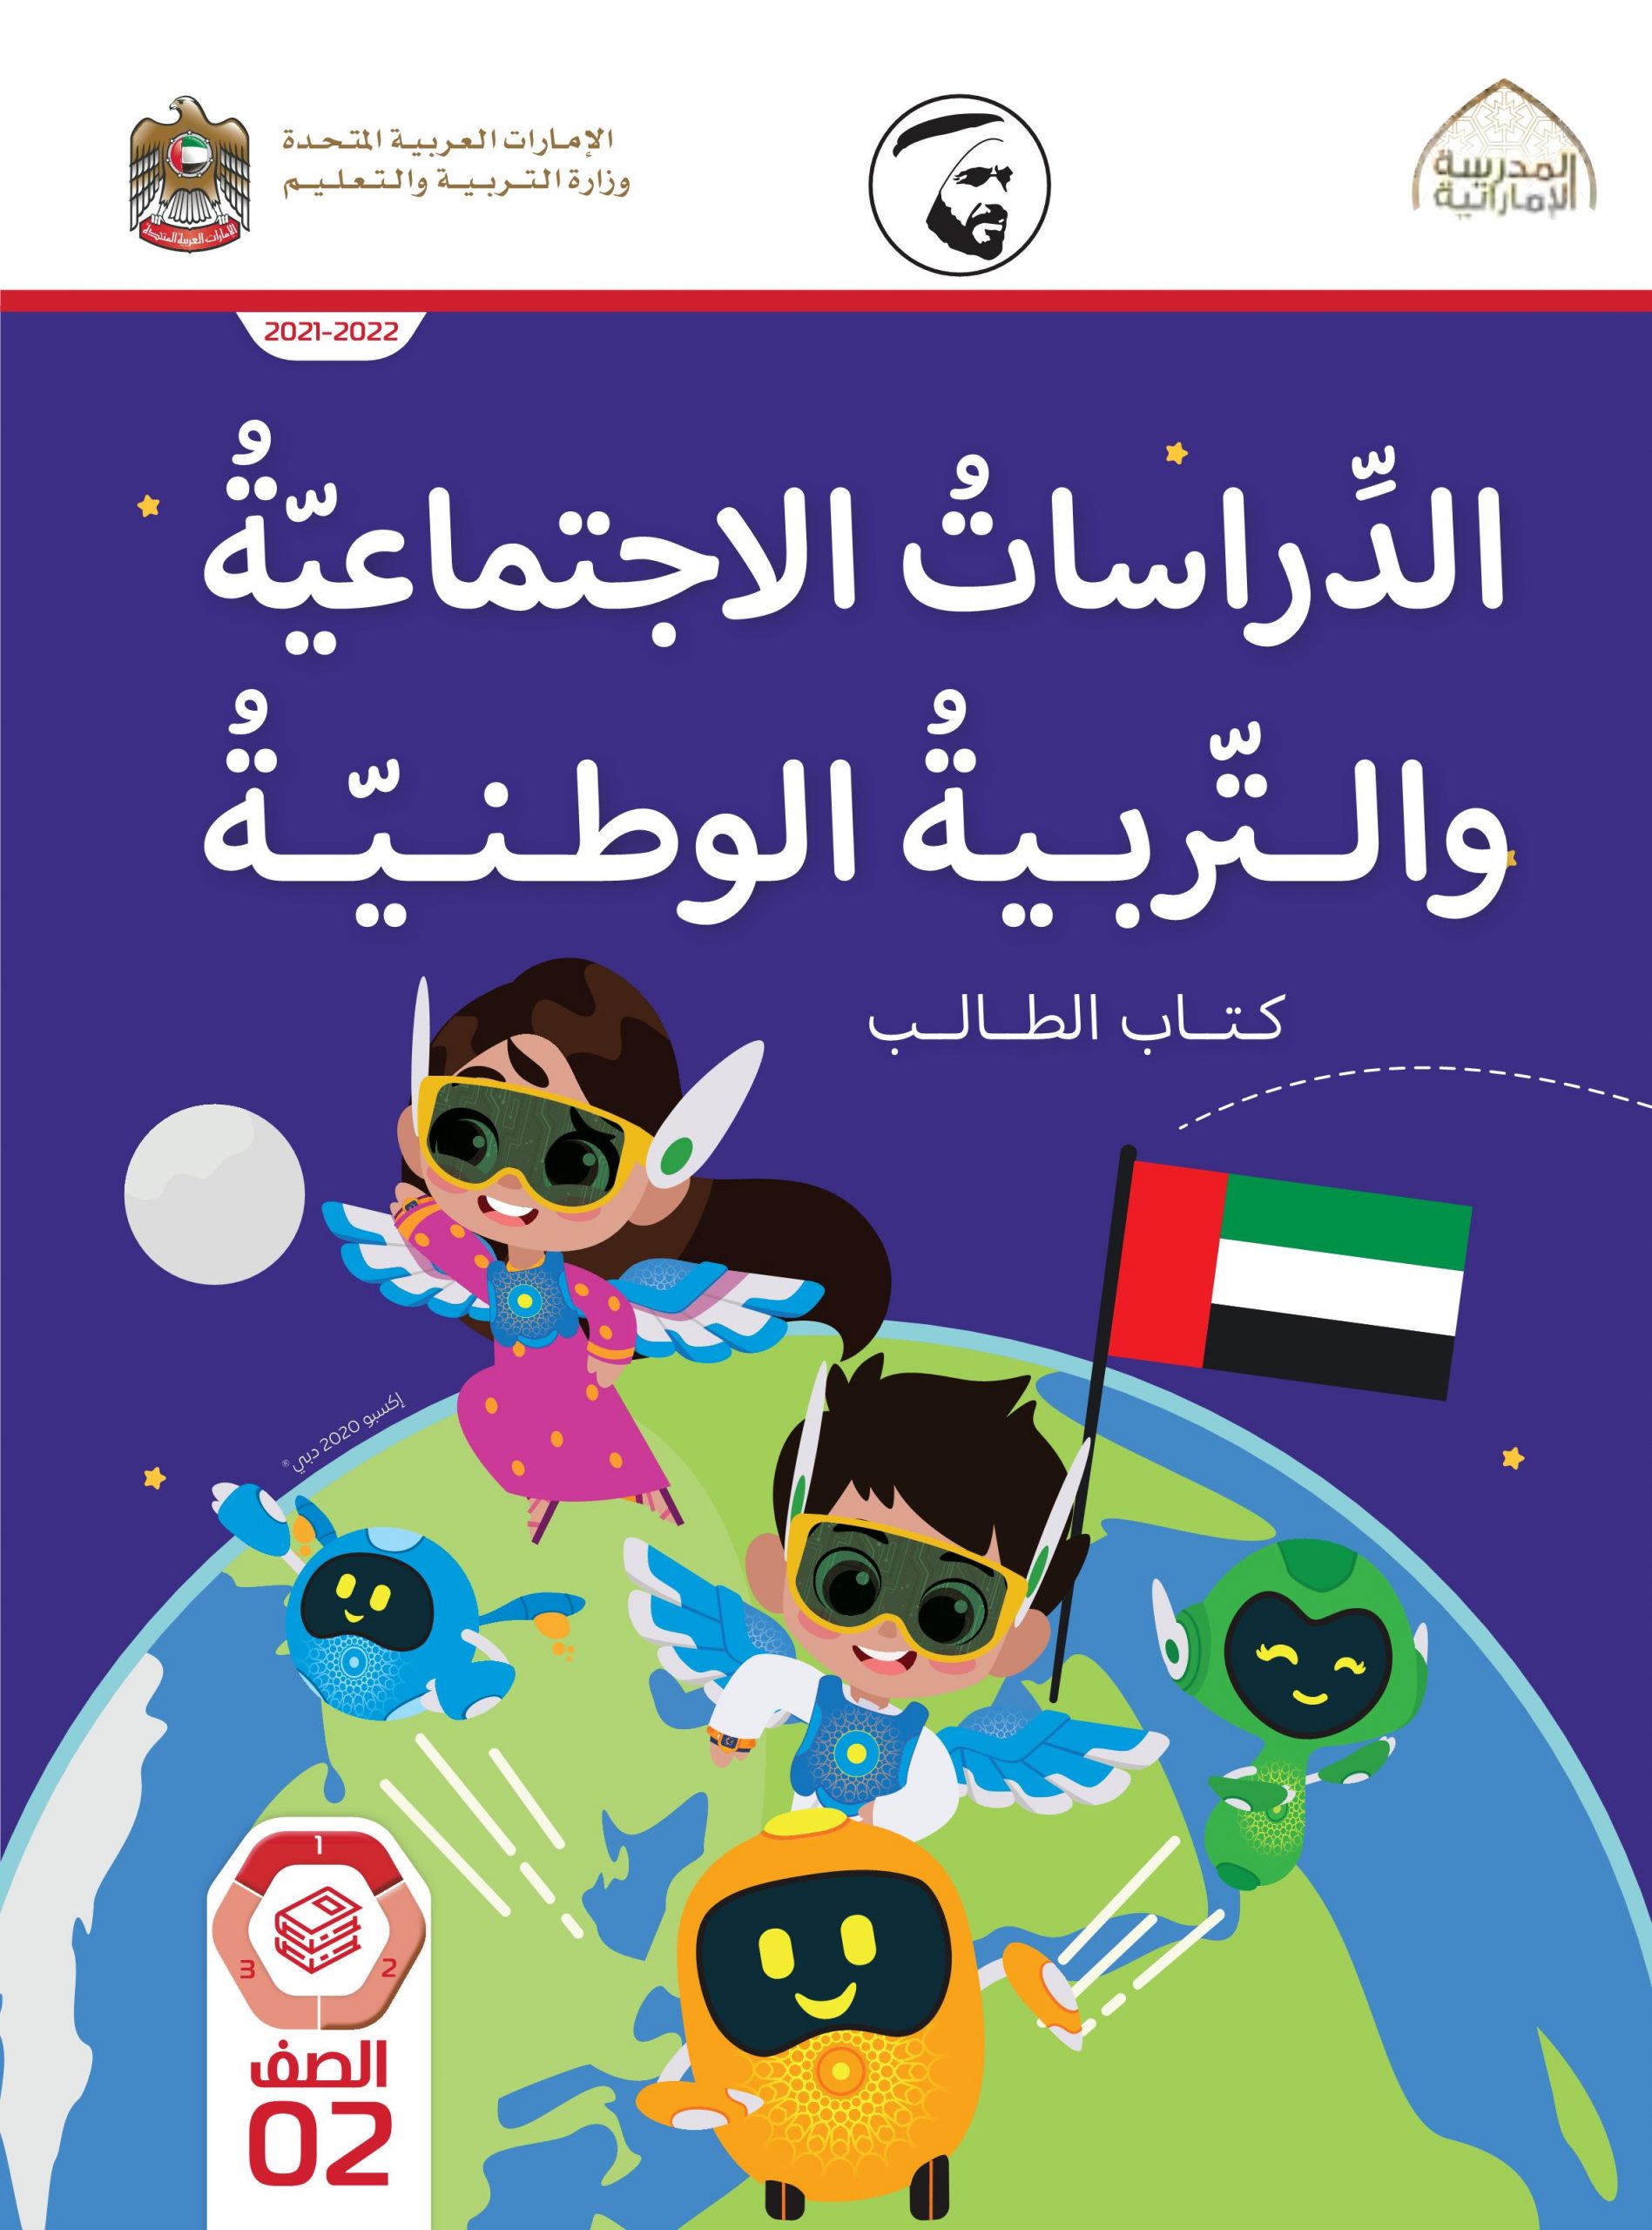 كتاب الطالب الفصل الدراسي الأول 2021-2022 الصف الثاني مادة الدراسات الإجتماعية والتربية الوطنية